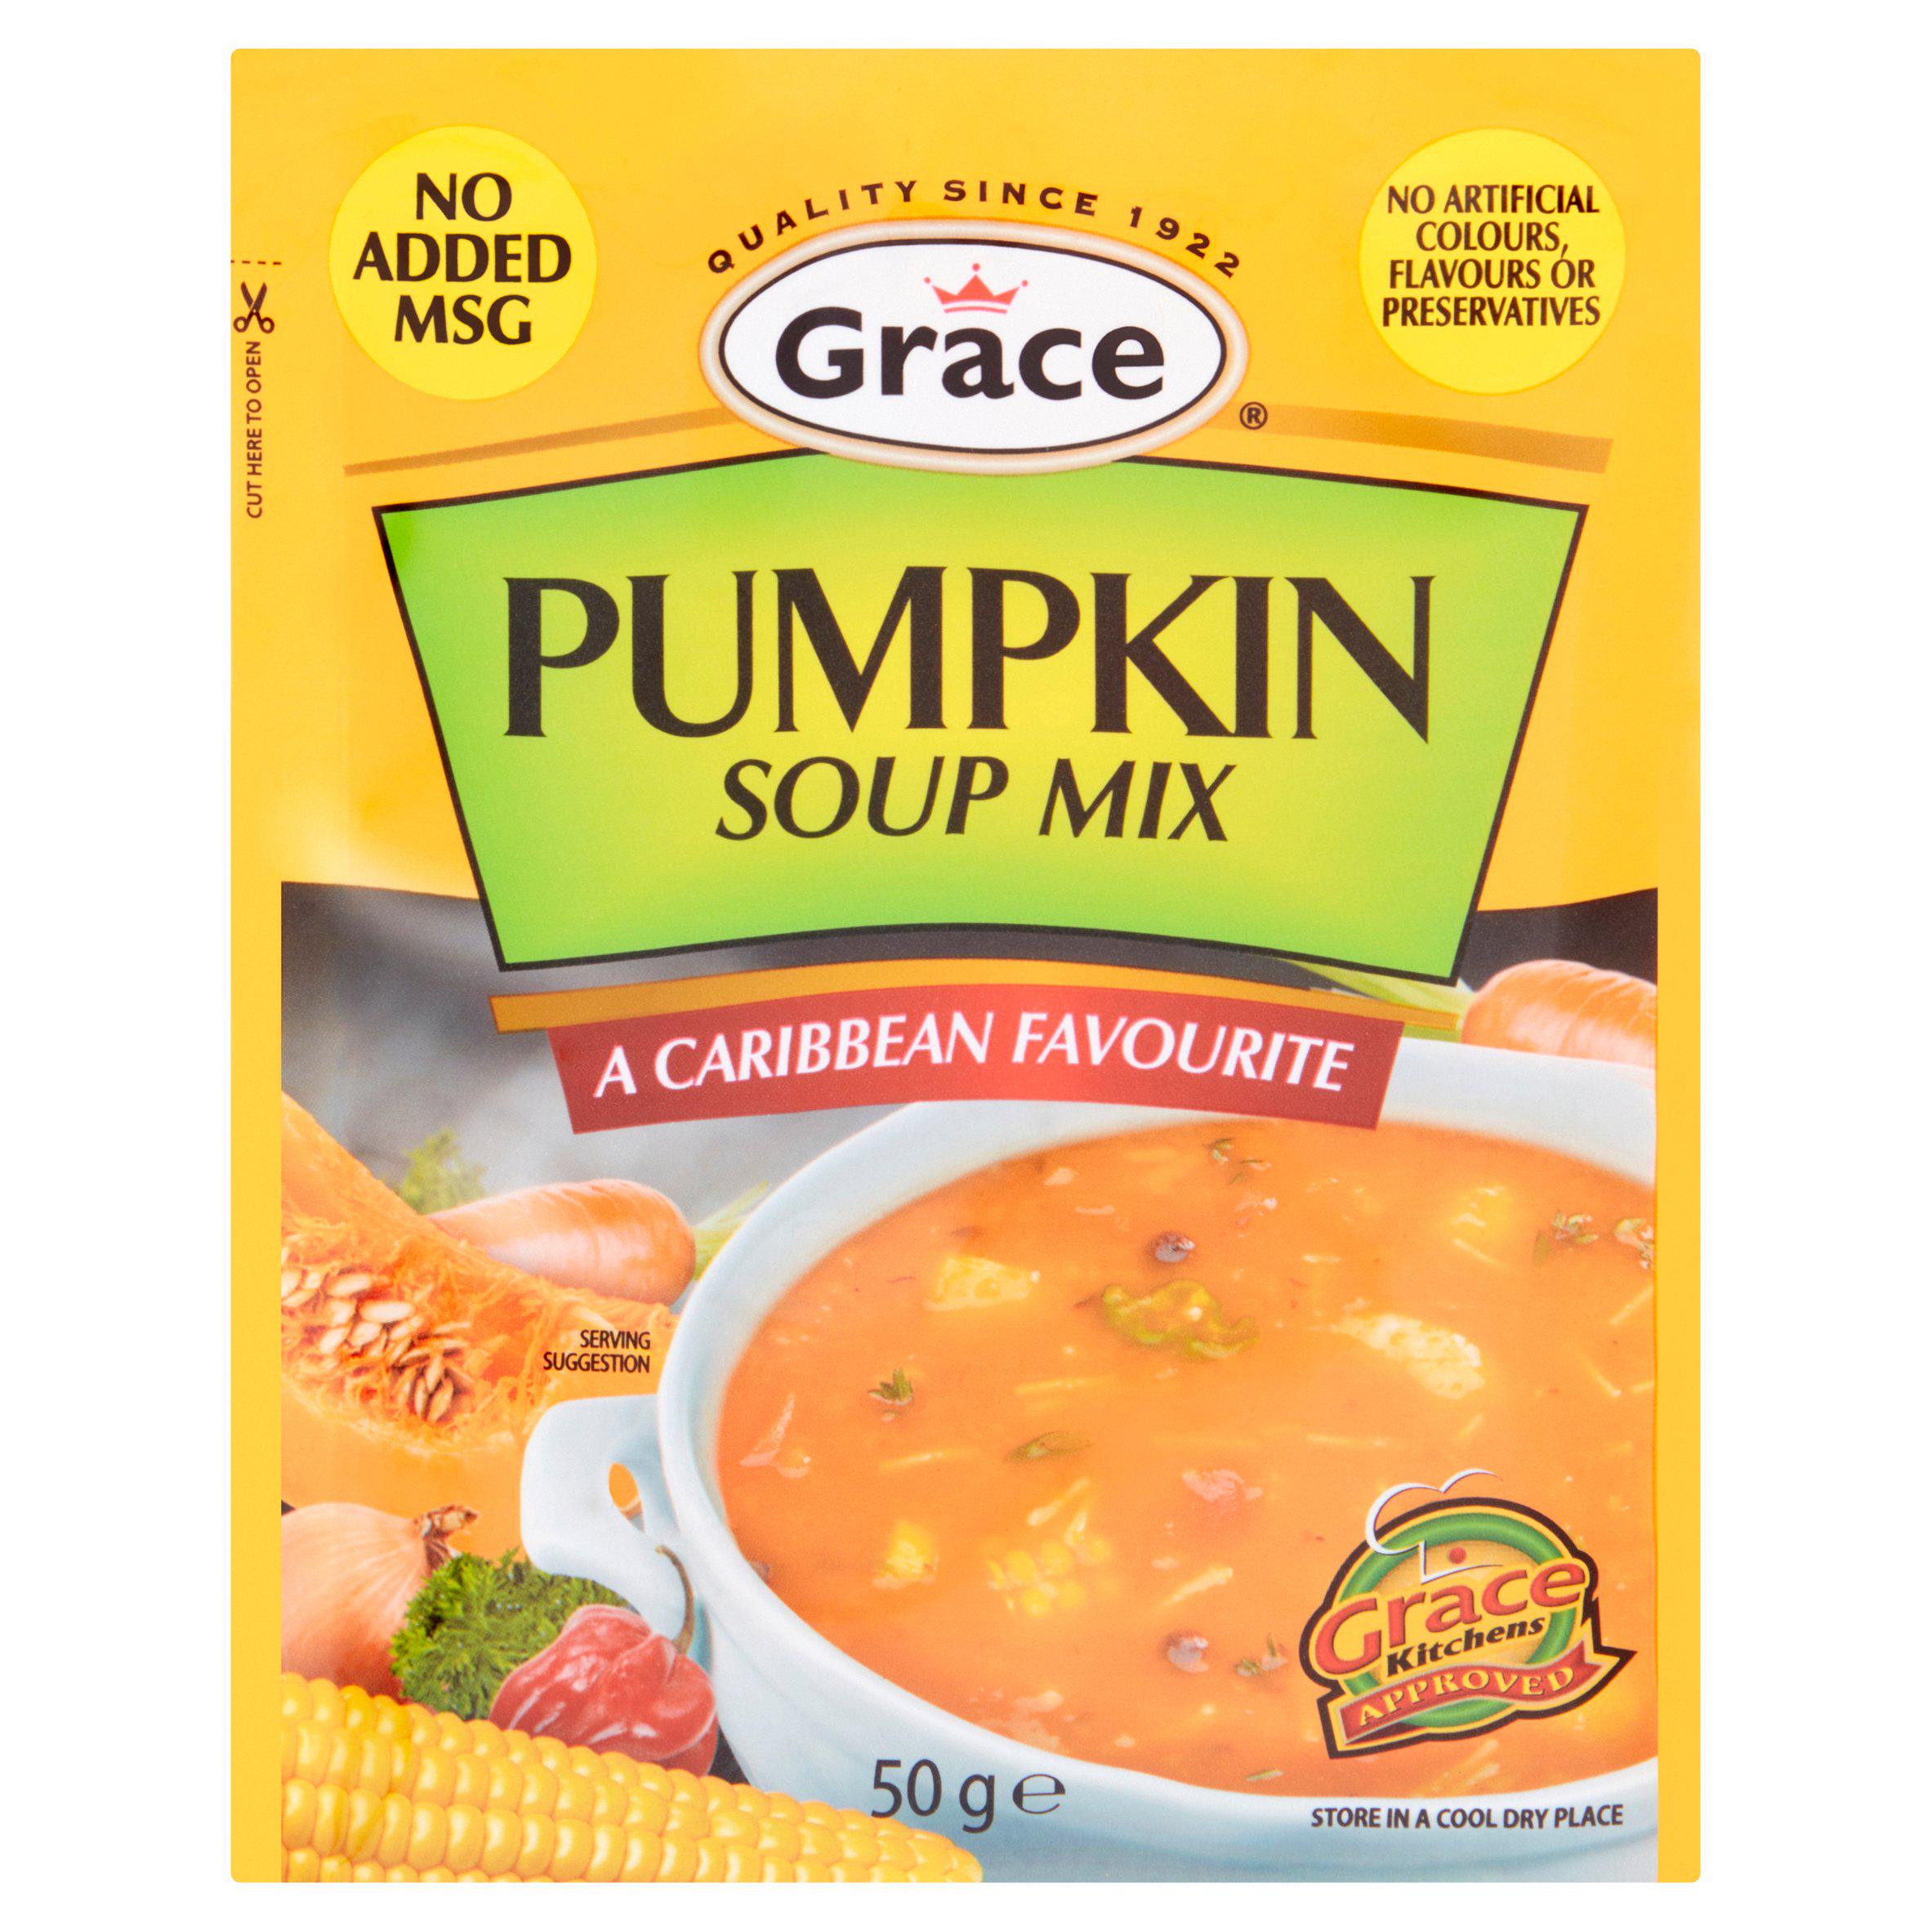 Grace cock soup mix